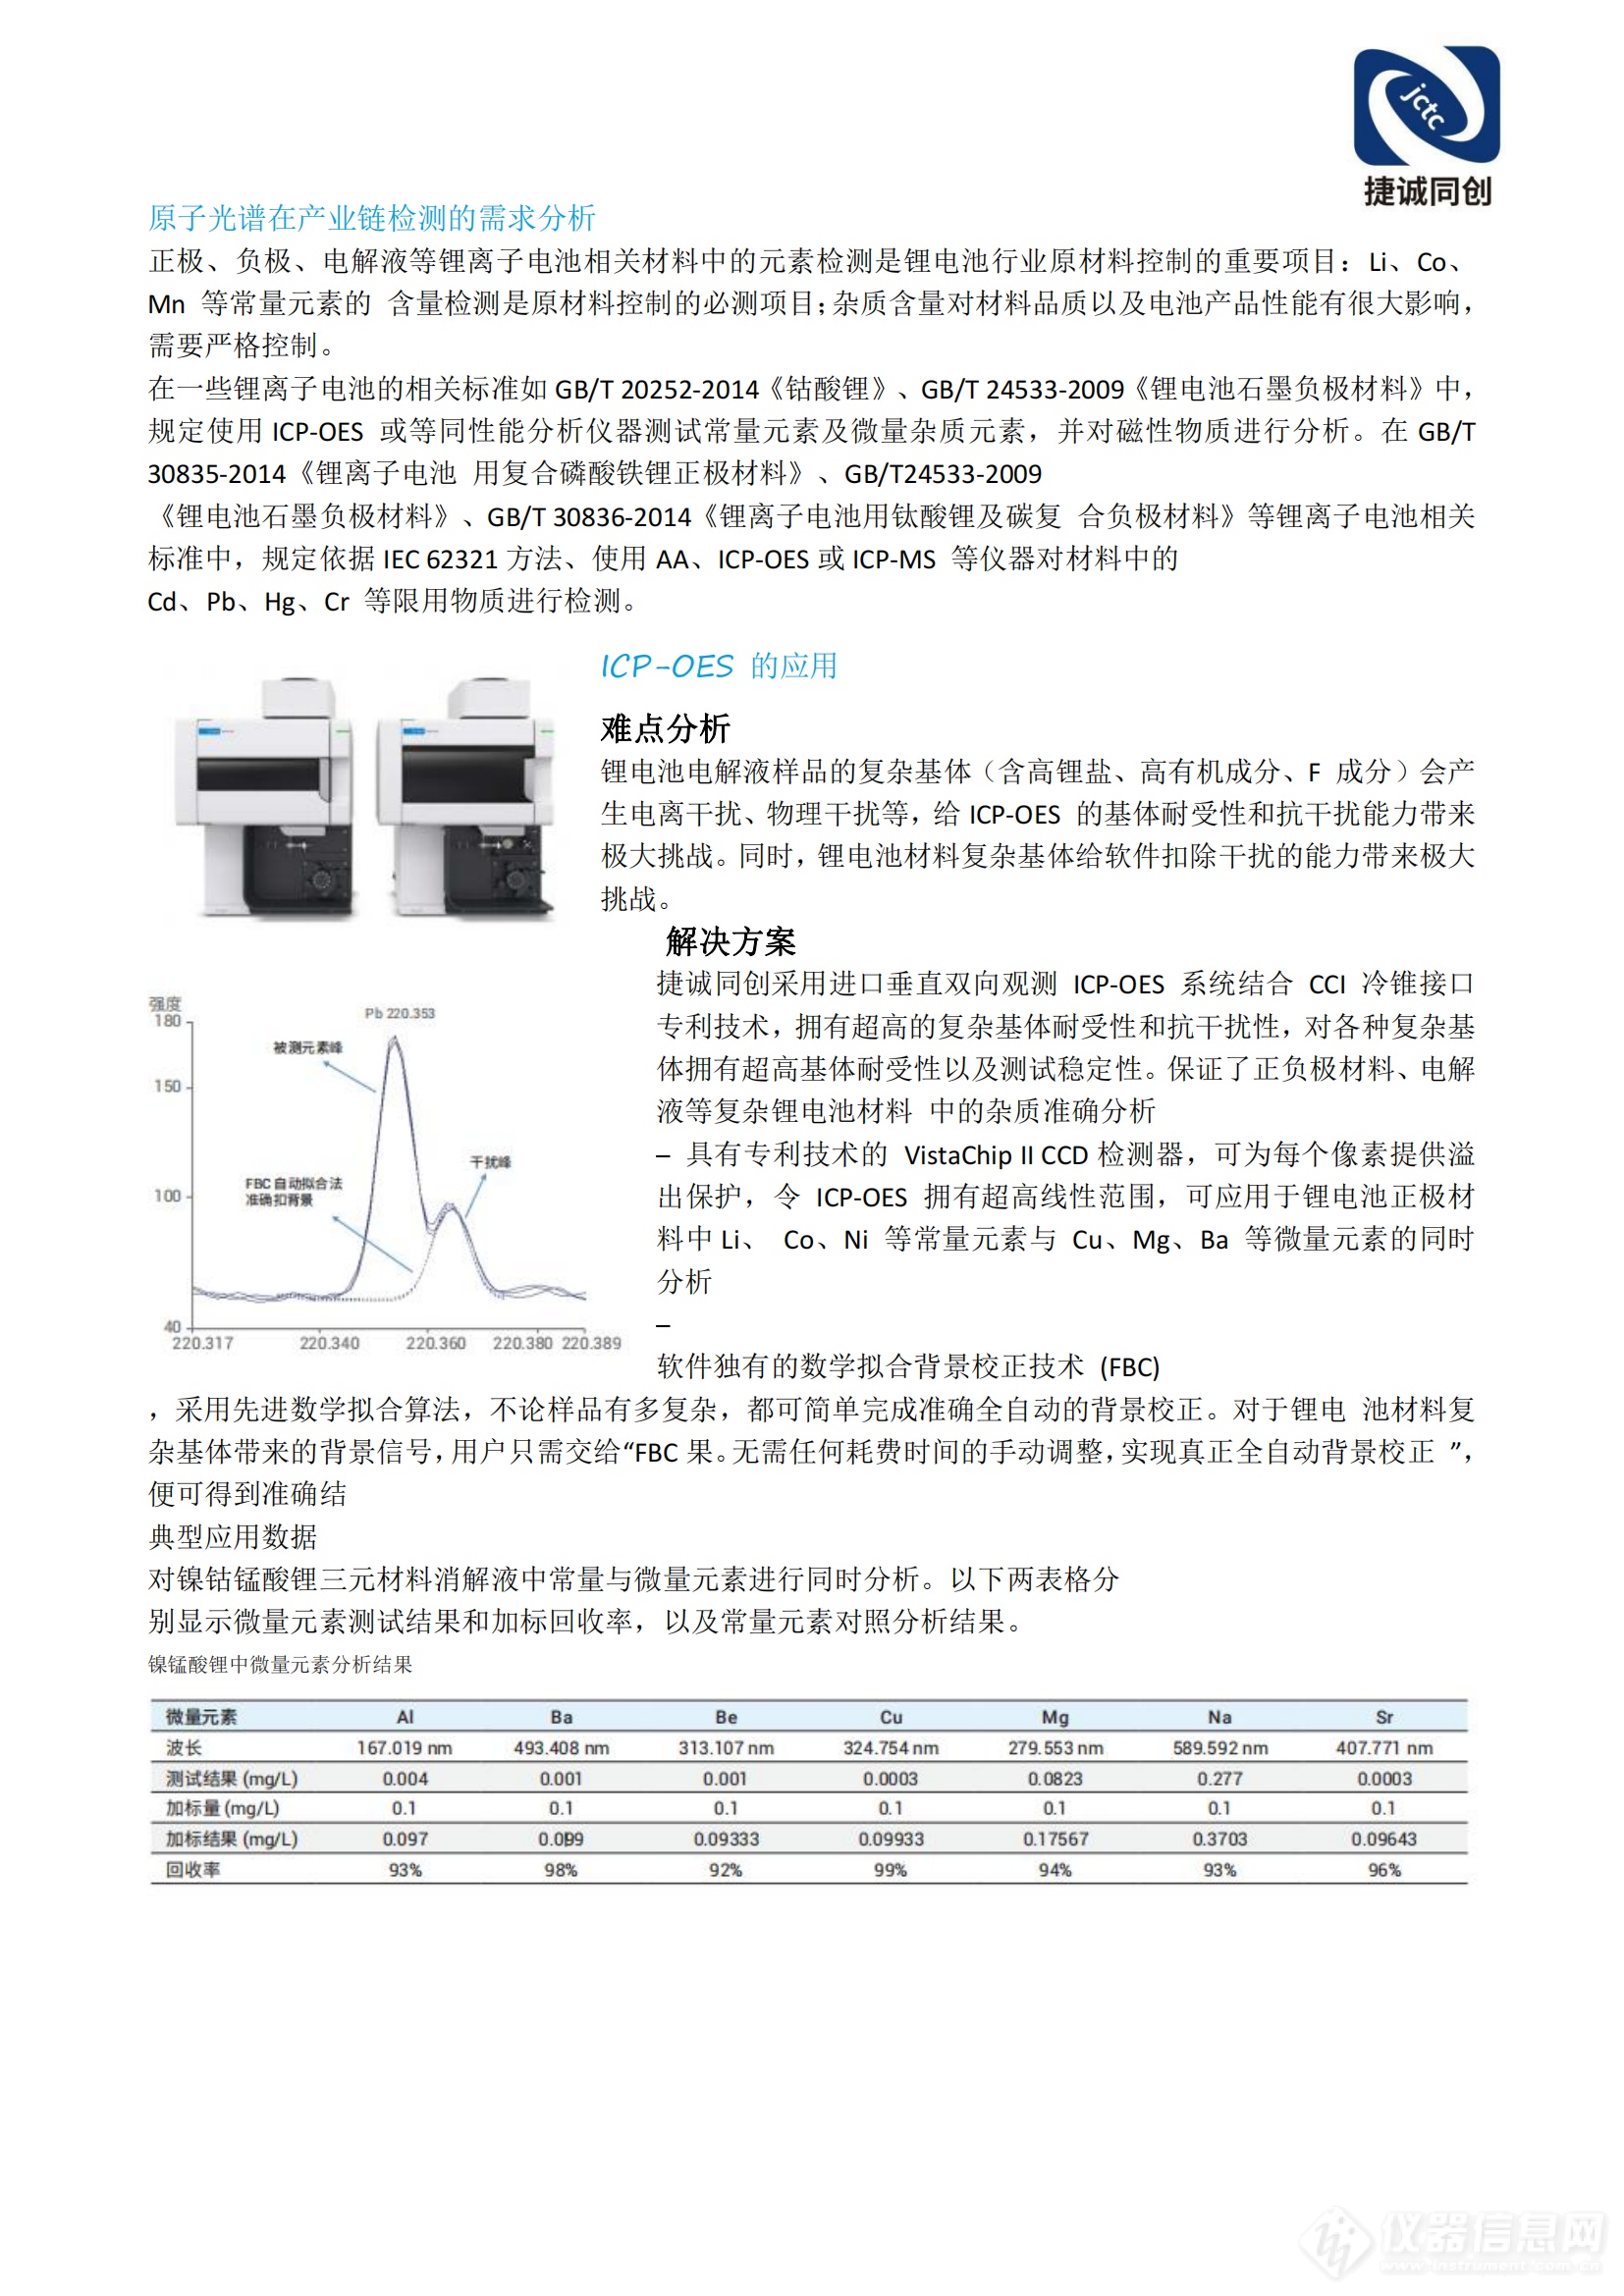 北京捷诚同创科技有限公司锂电池解决方案(2)_04.png